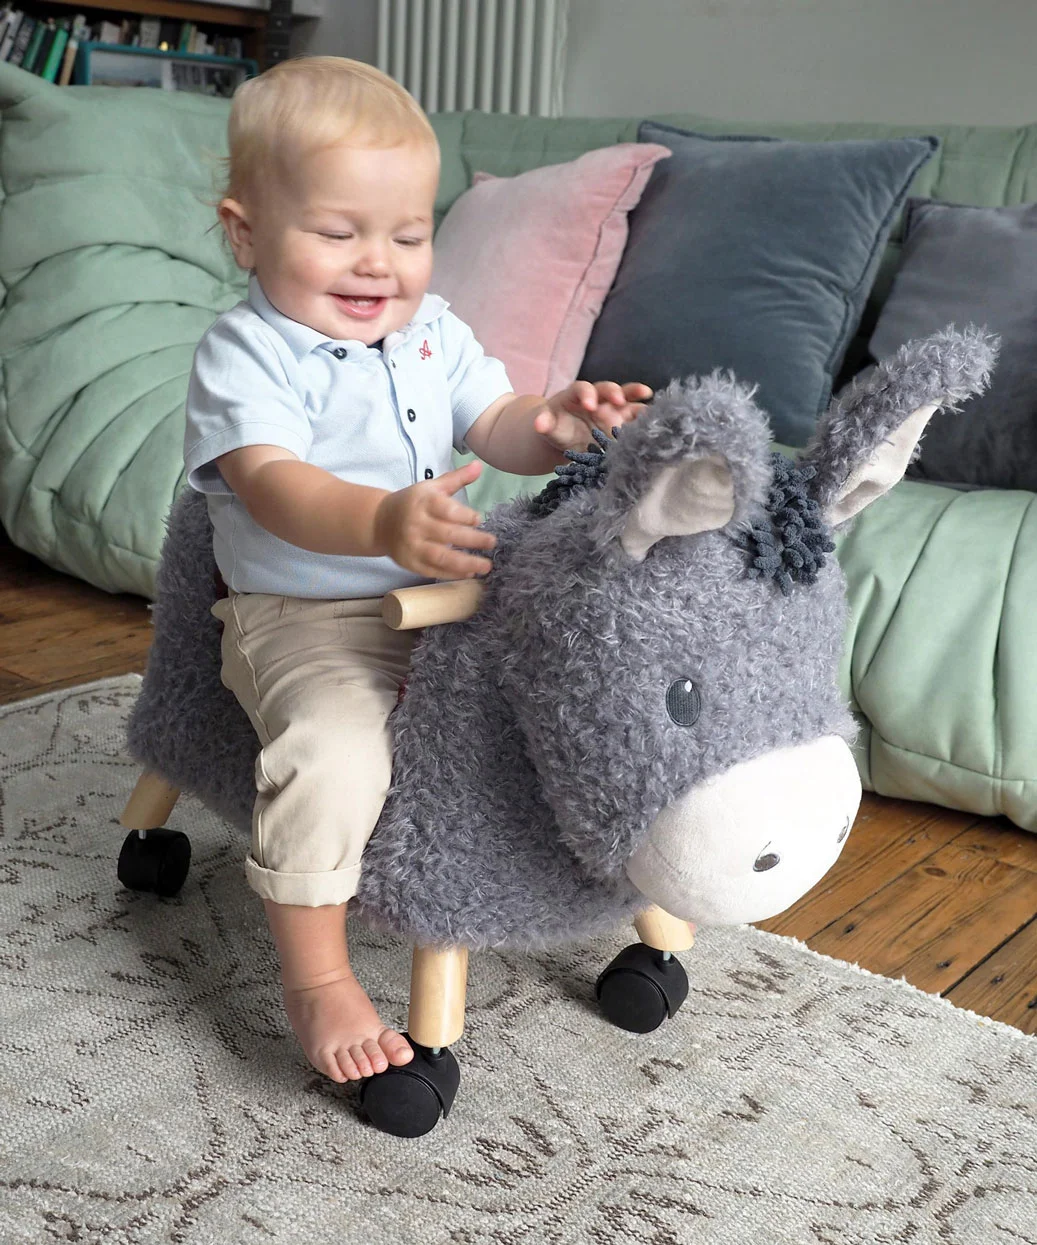 Bojangles Donkey Ride On Toy